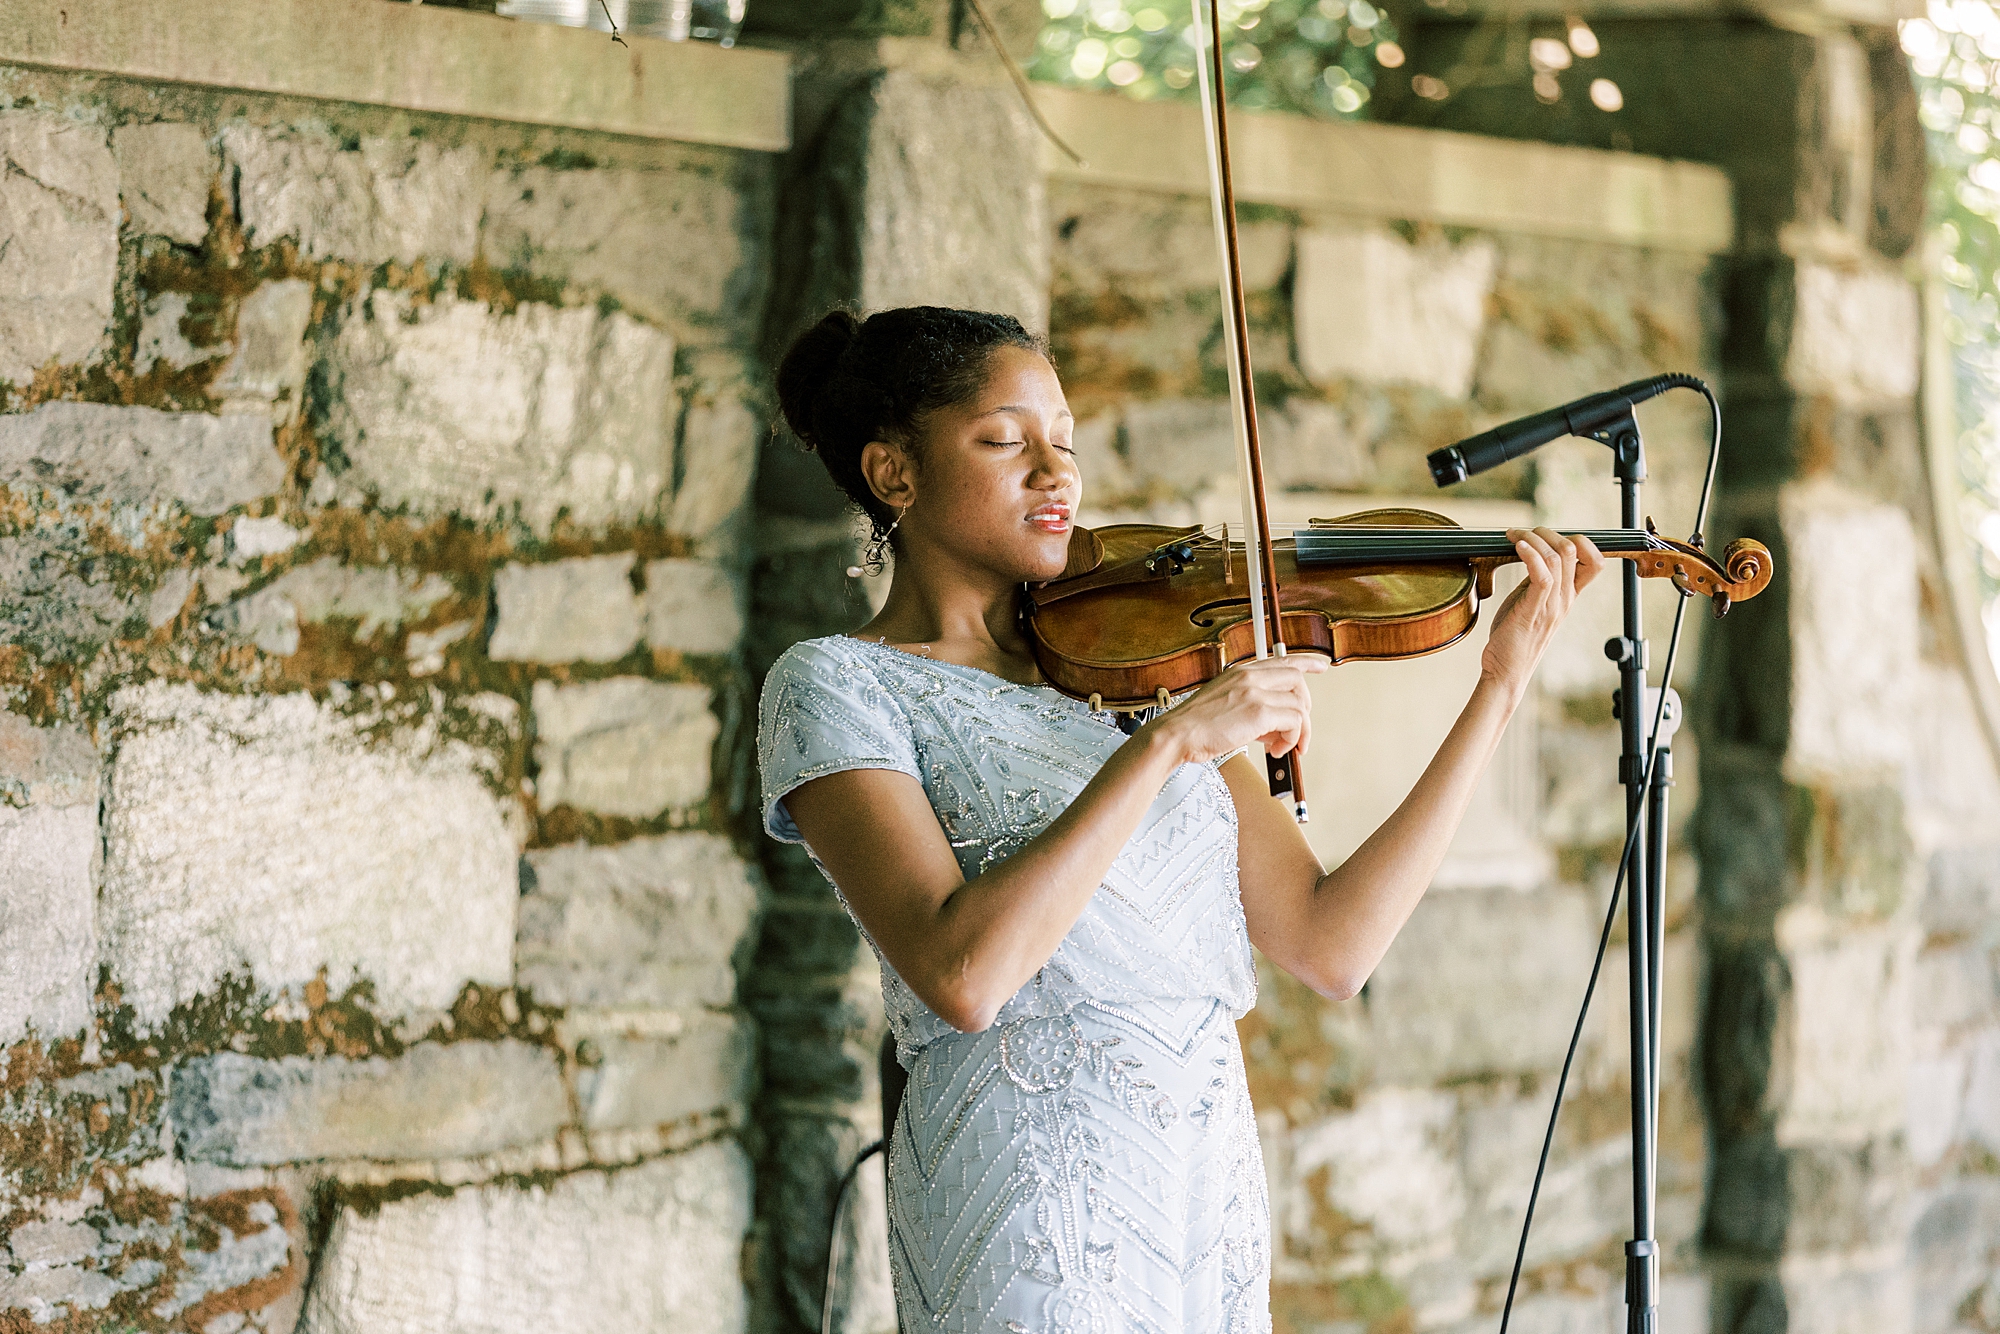 violinist plays during wedding ceremony at Curtis Arboretum